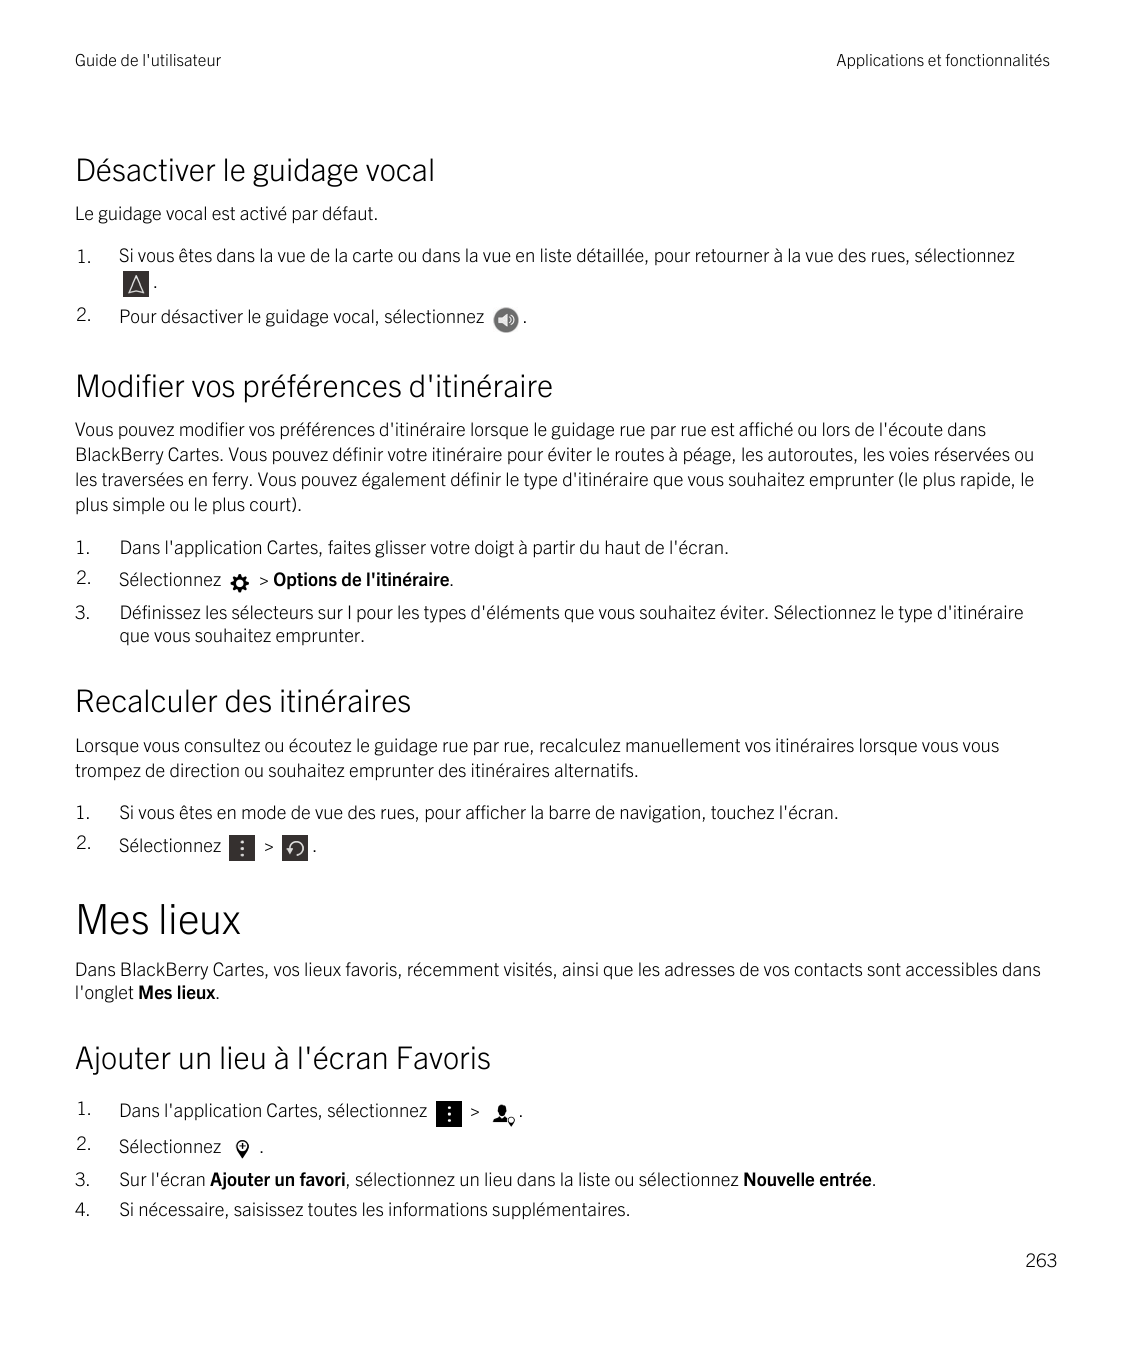 Guide de l'utilisateurApplications et fonctionnalitésDésactiver le guidage vocalLe guidage vocal est activé par défaut.1.Si vous